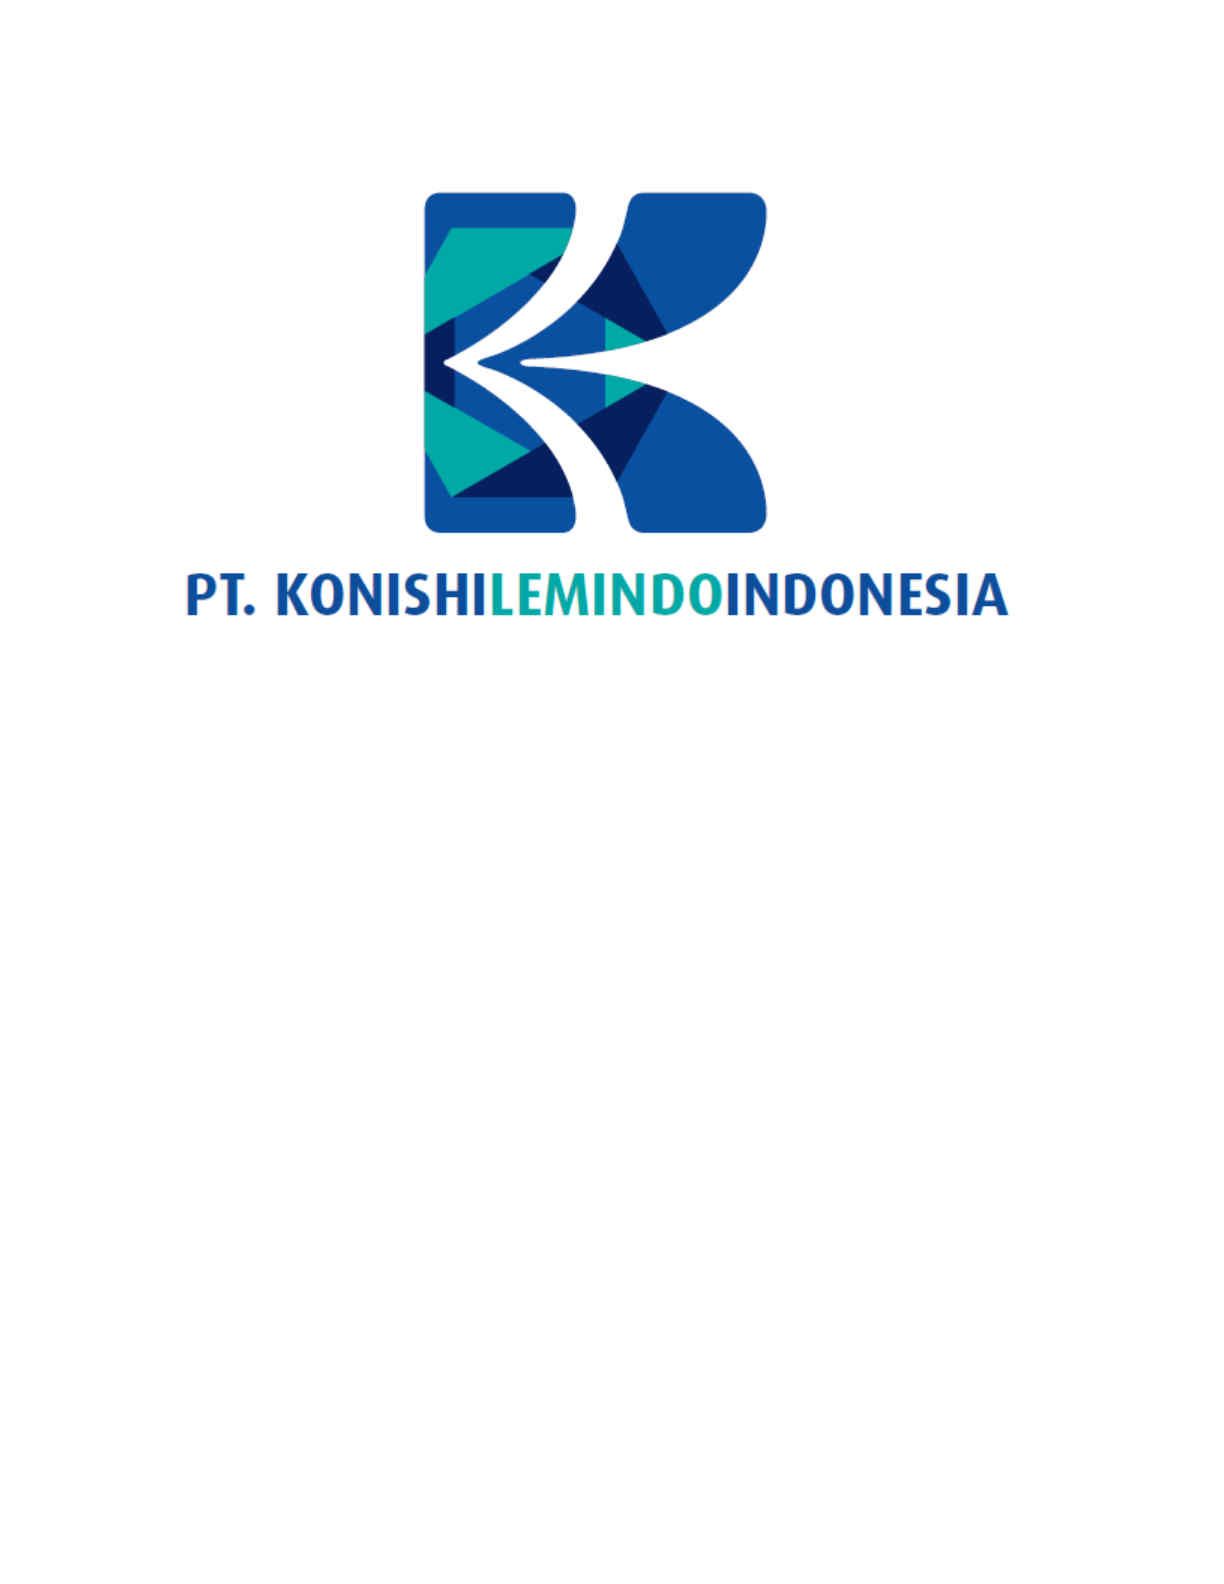 PT. Konishi Lemindo Indonesia